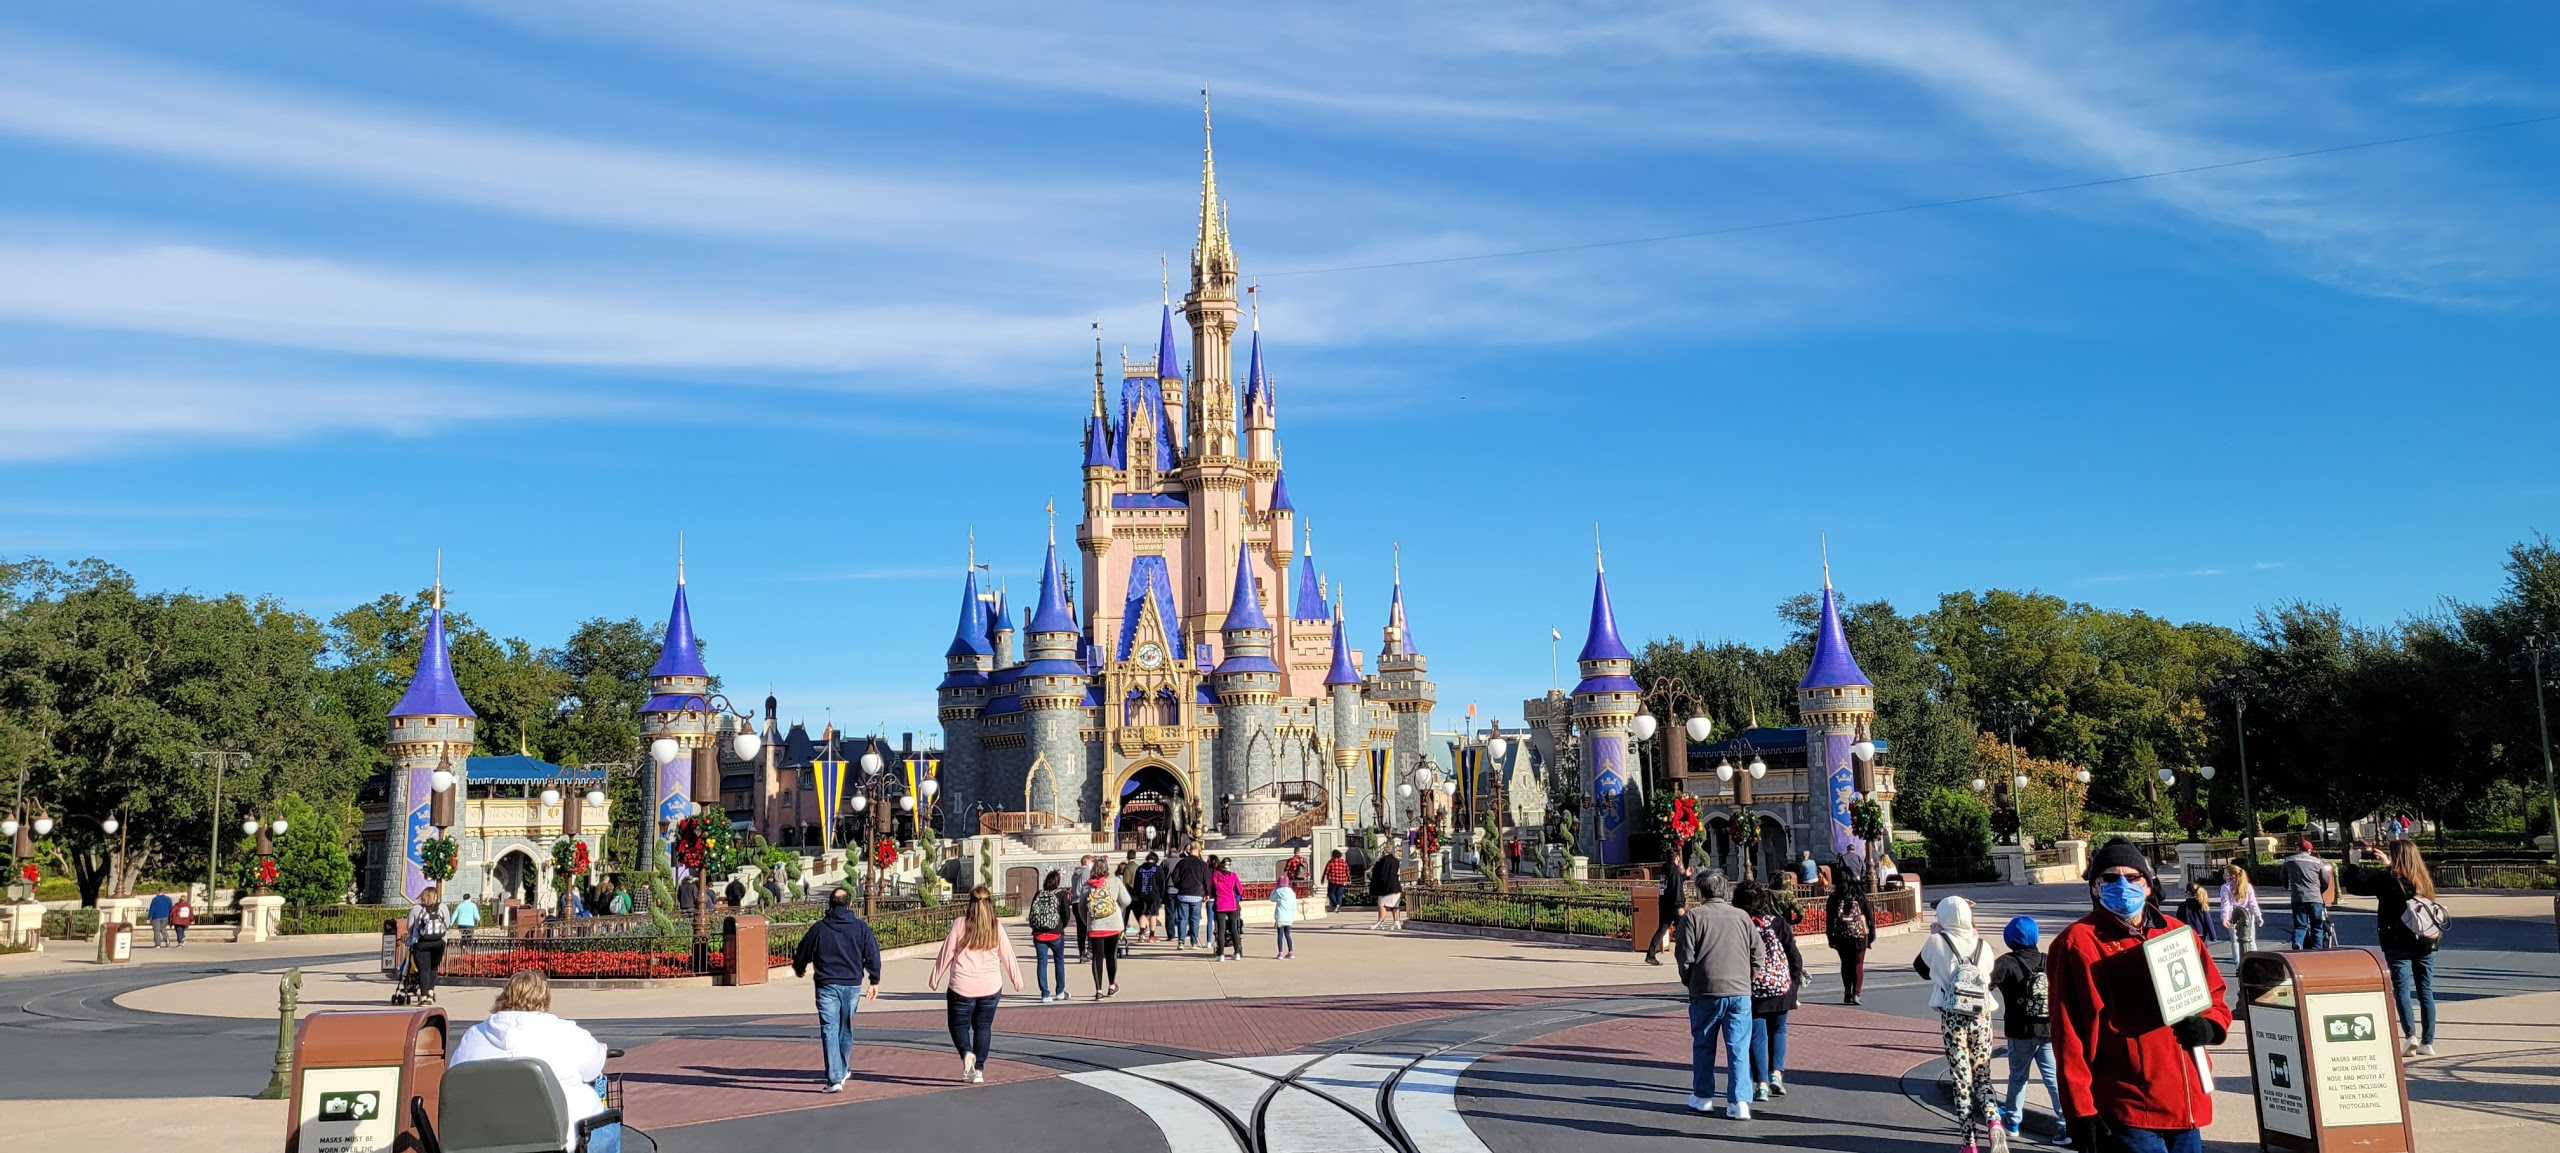 Disney World no longer requiring Face Masks outdoors